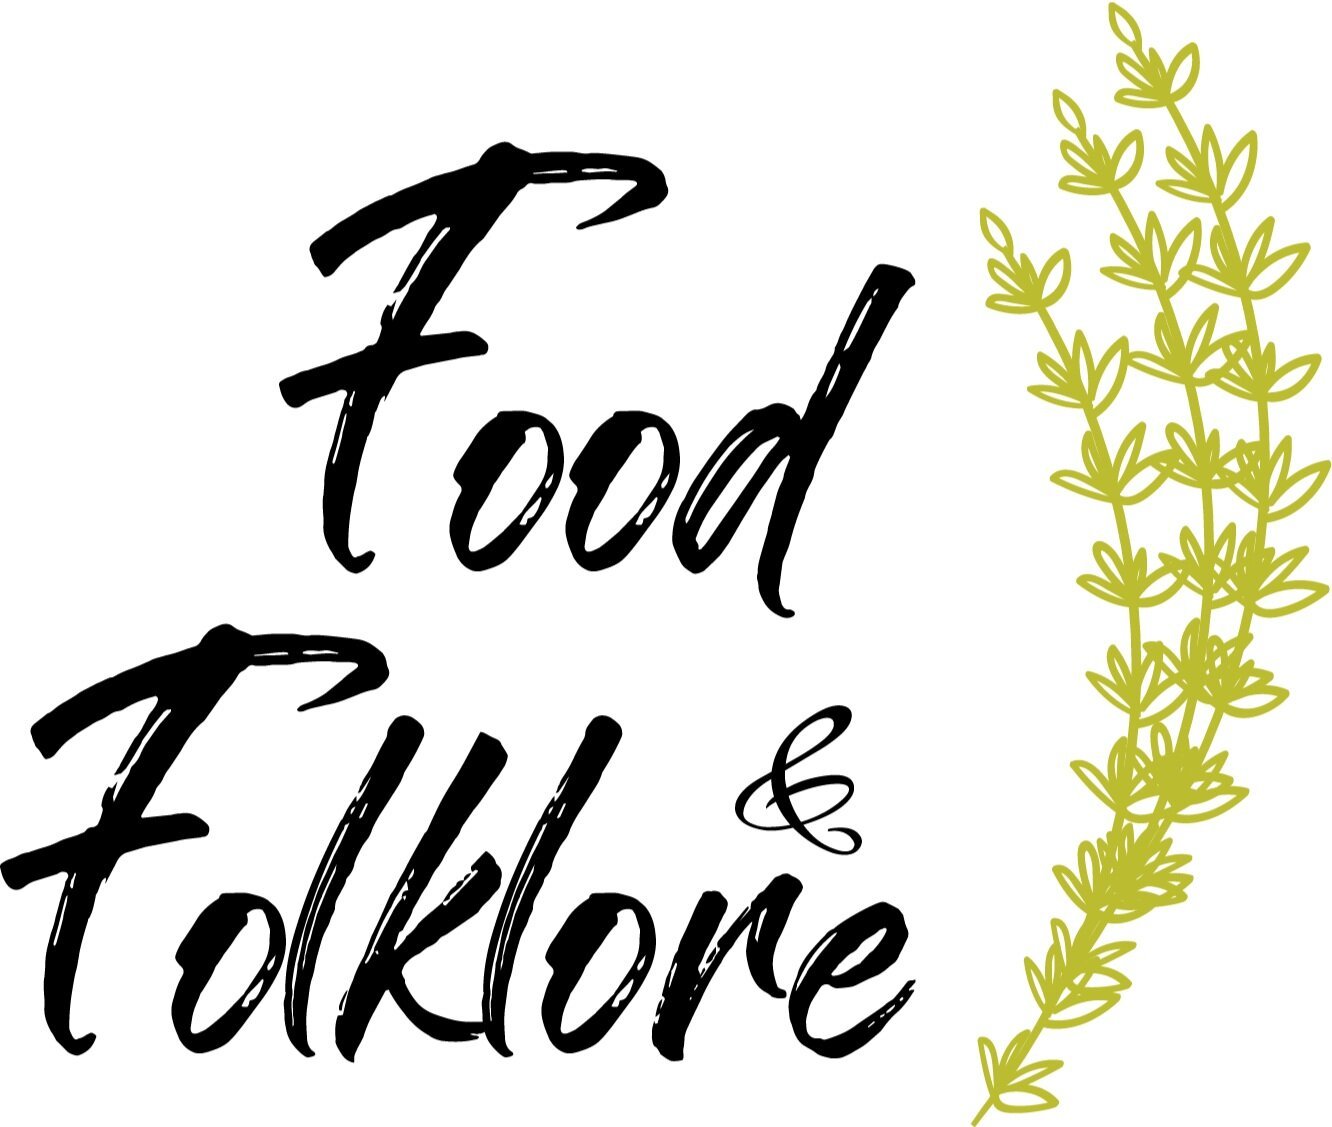 Food+_+Folklore+%5BLogo%5D+Chartreuse_Black_cm.jpg